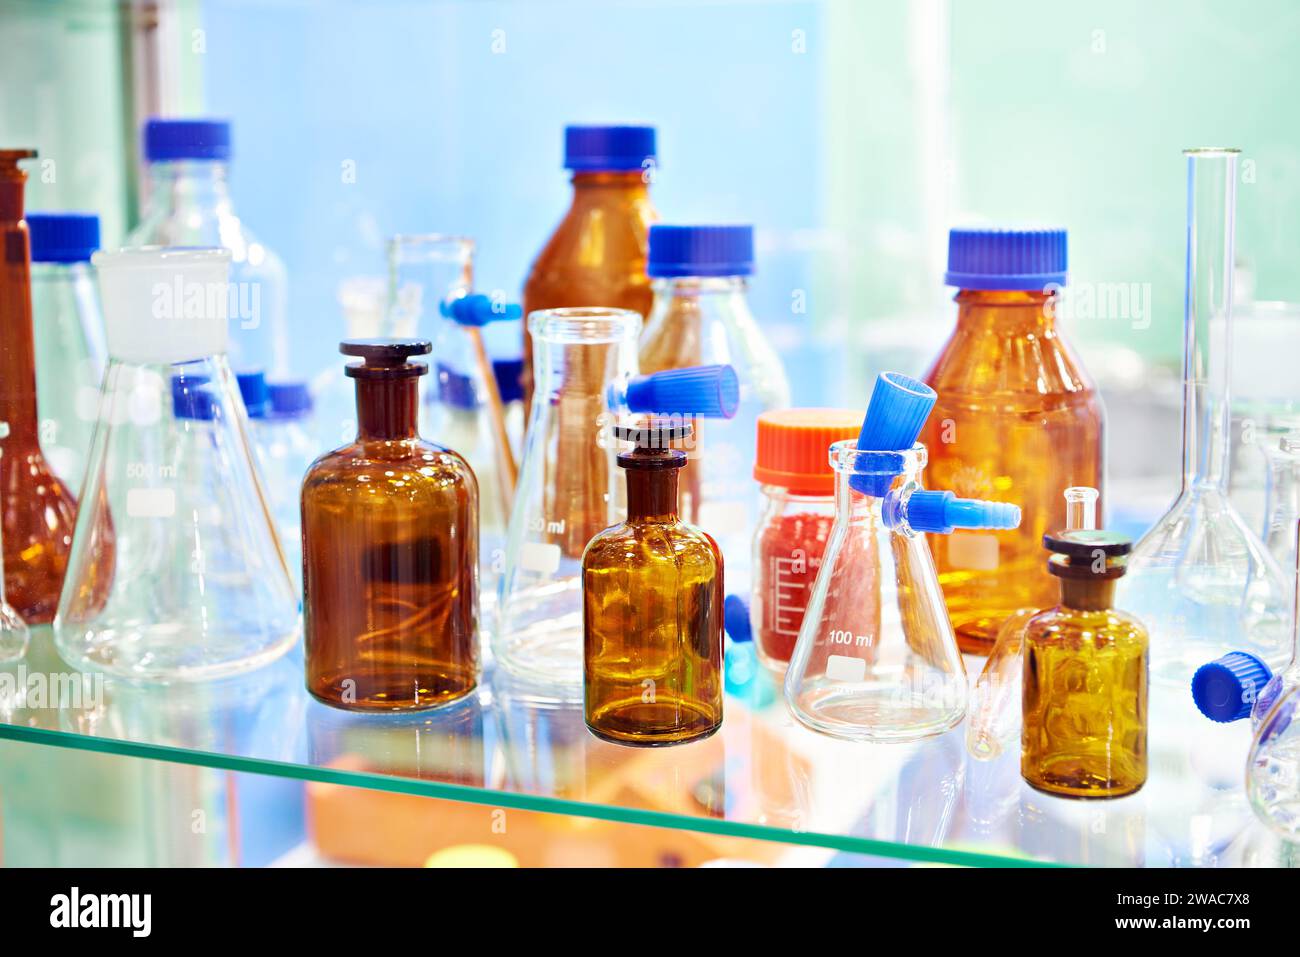 Boîtes en verre de laboratoire, bouteilles, bocaux et flacons en magasin Banque D'Images